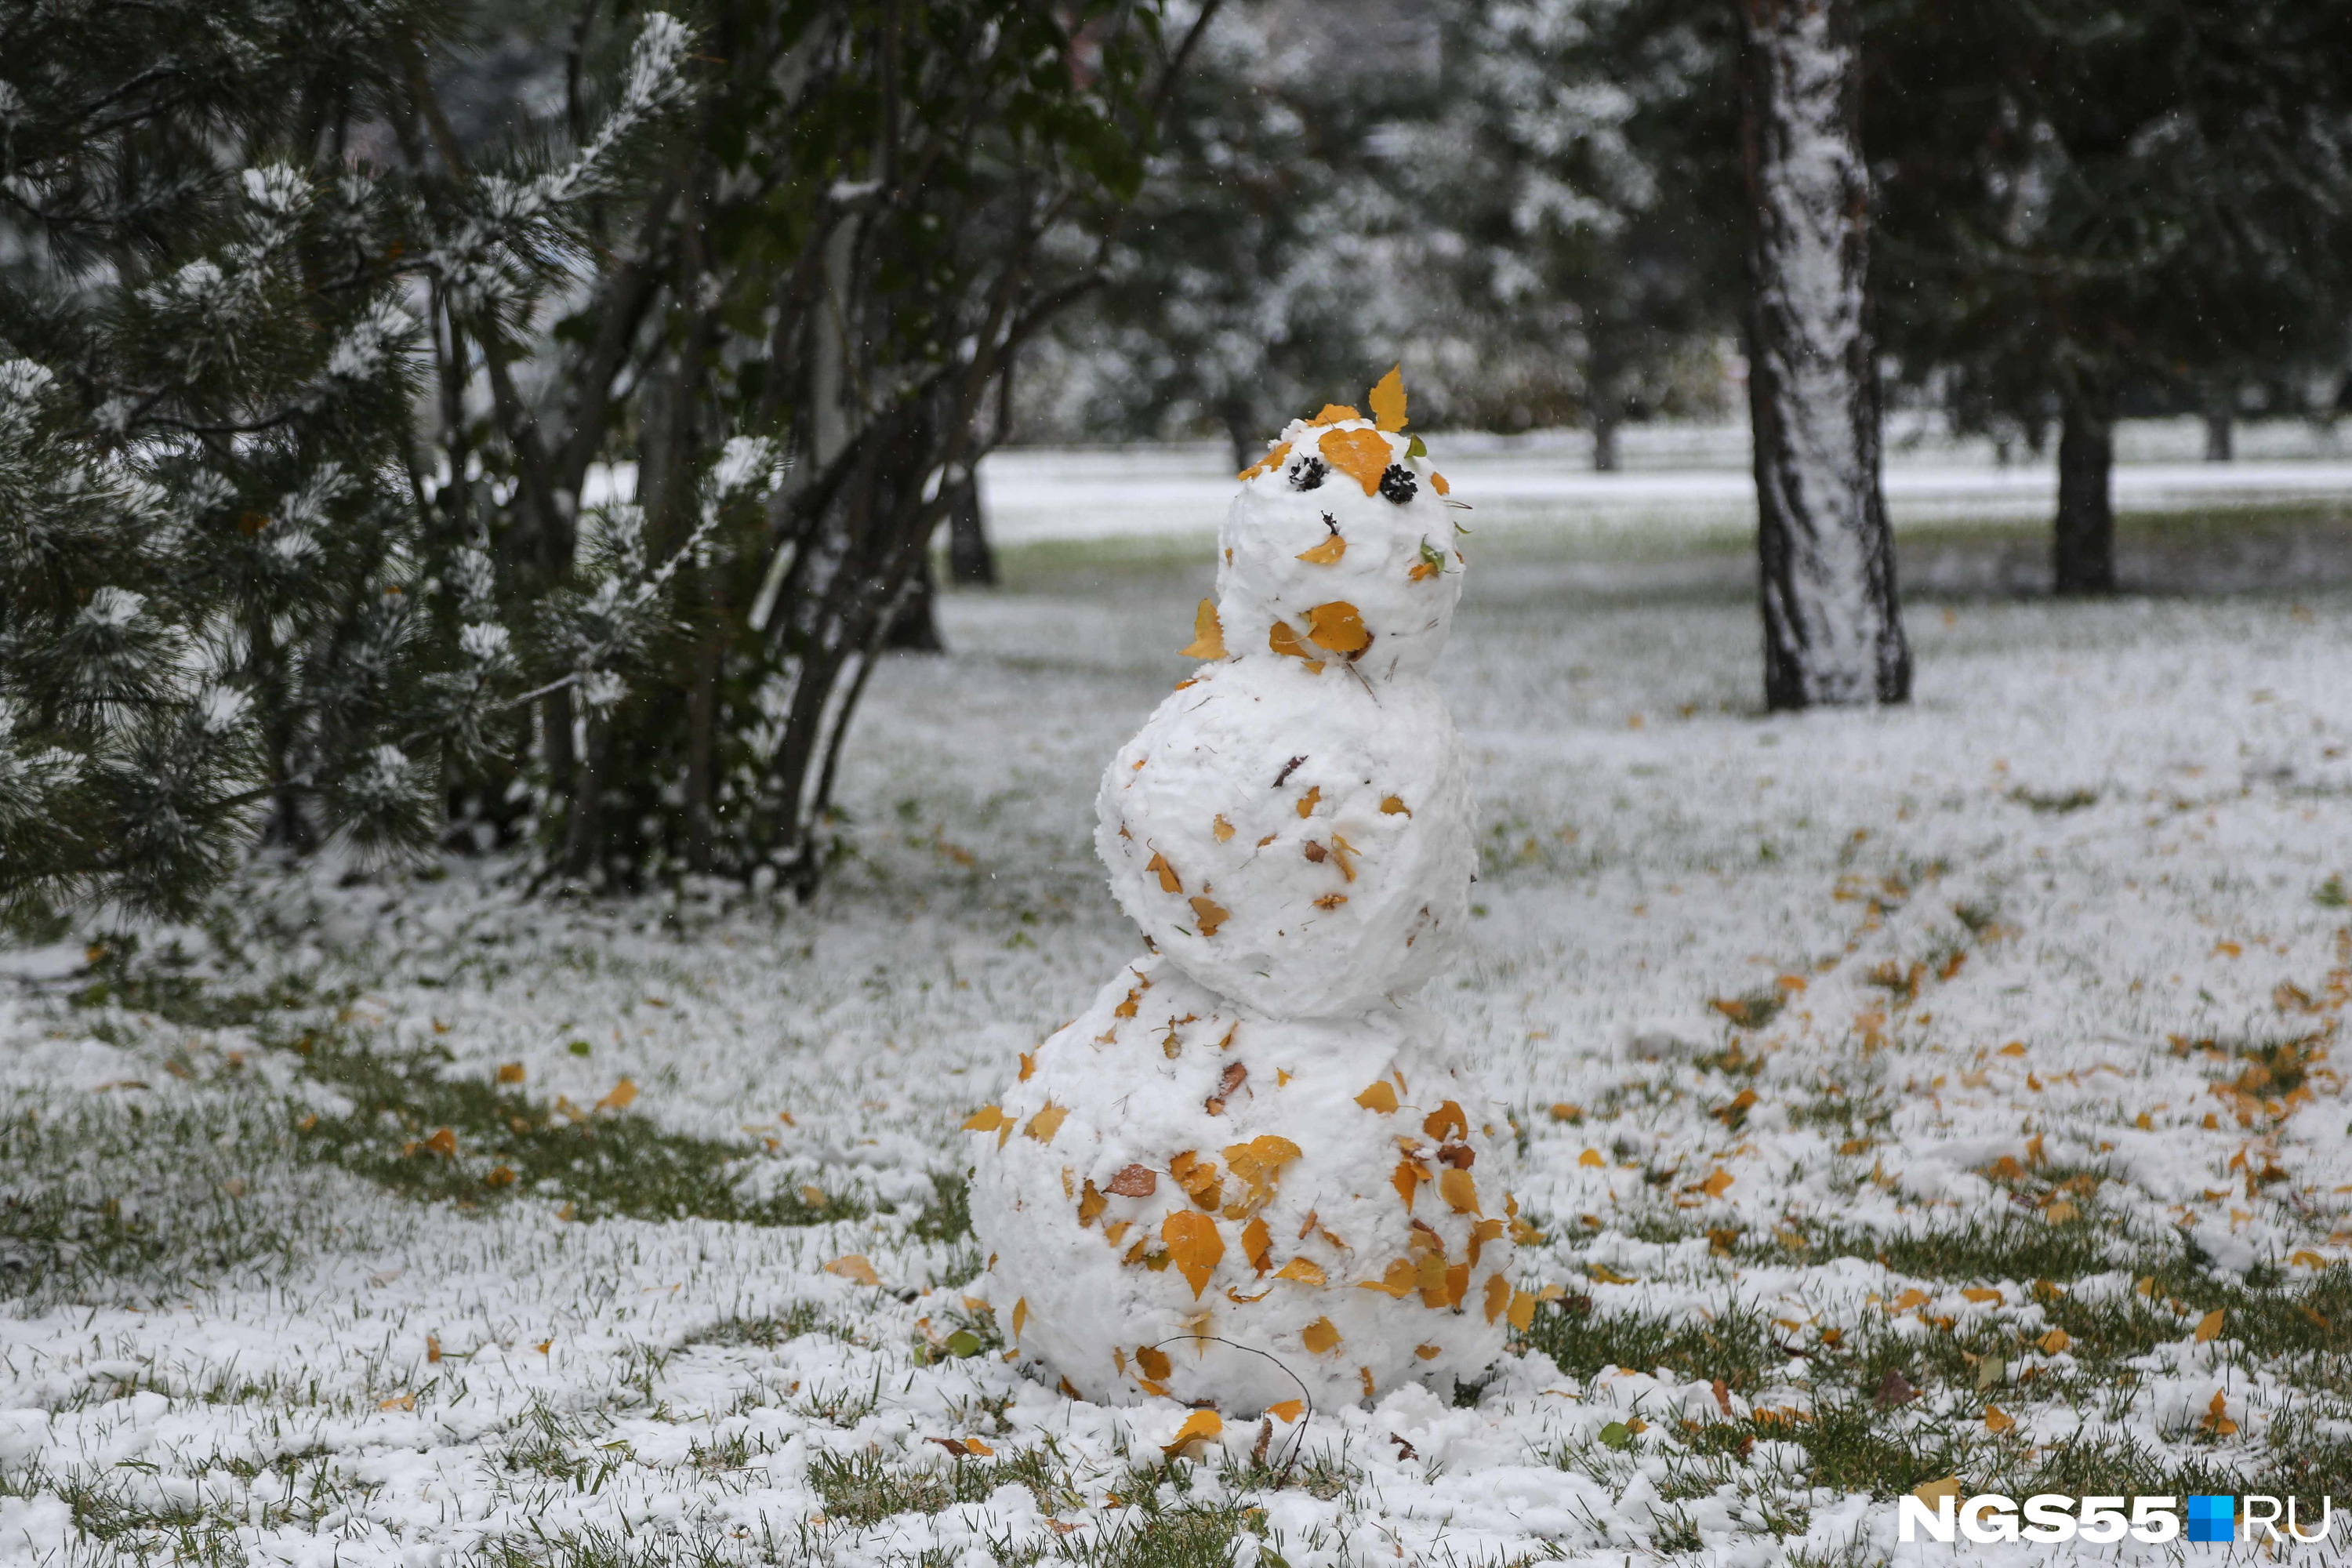 А для этого снеговика «стройматериалы» подобрали осенне-зимние